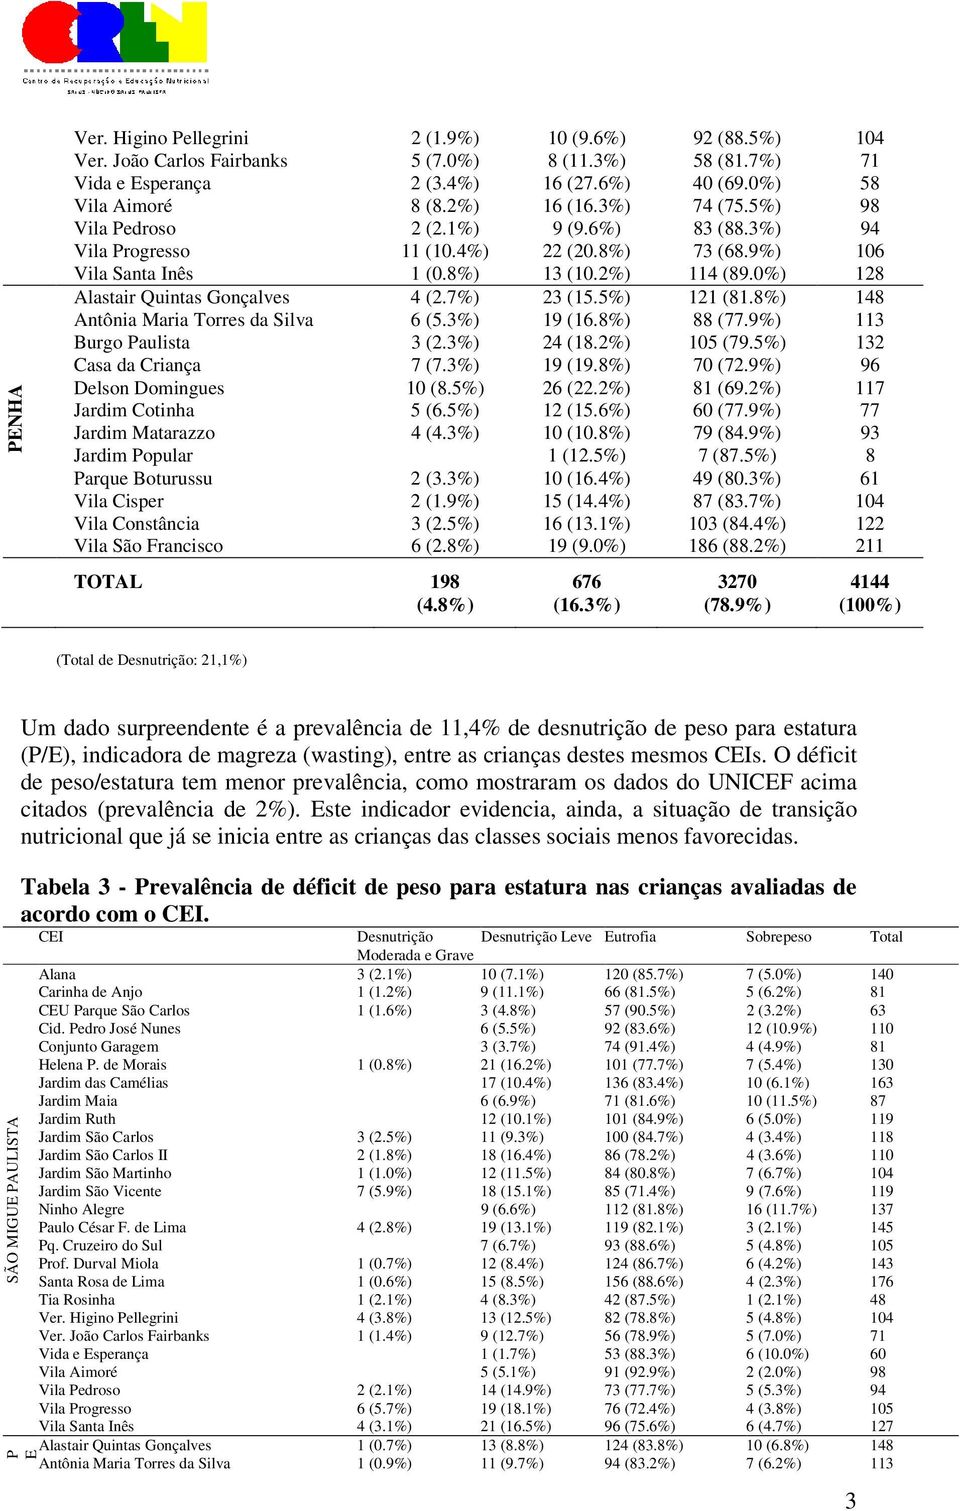 0%) 128 Alastair Quintas Gonçalves 4 (2.7%) 23 (15.5%) 121 (81.8%) 148 Antônia Maria Torres da Silva 6 (5.3%) 19 (16.8%) 88 (77.9%) 113 Burgo Paulista 3 (2.3%) 24 (18.2%) 105 (79.